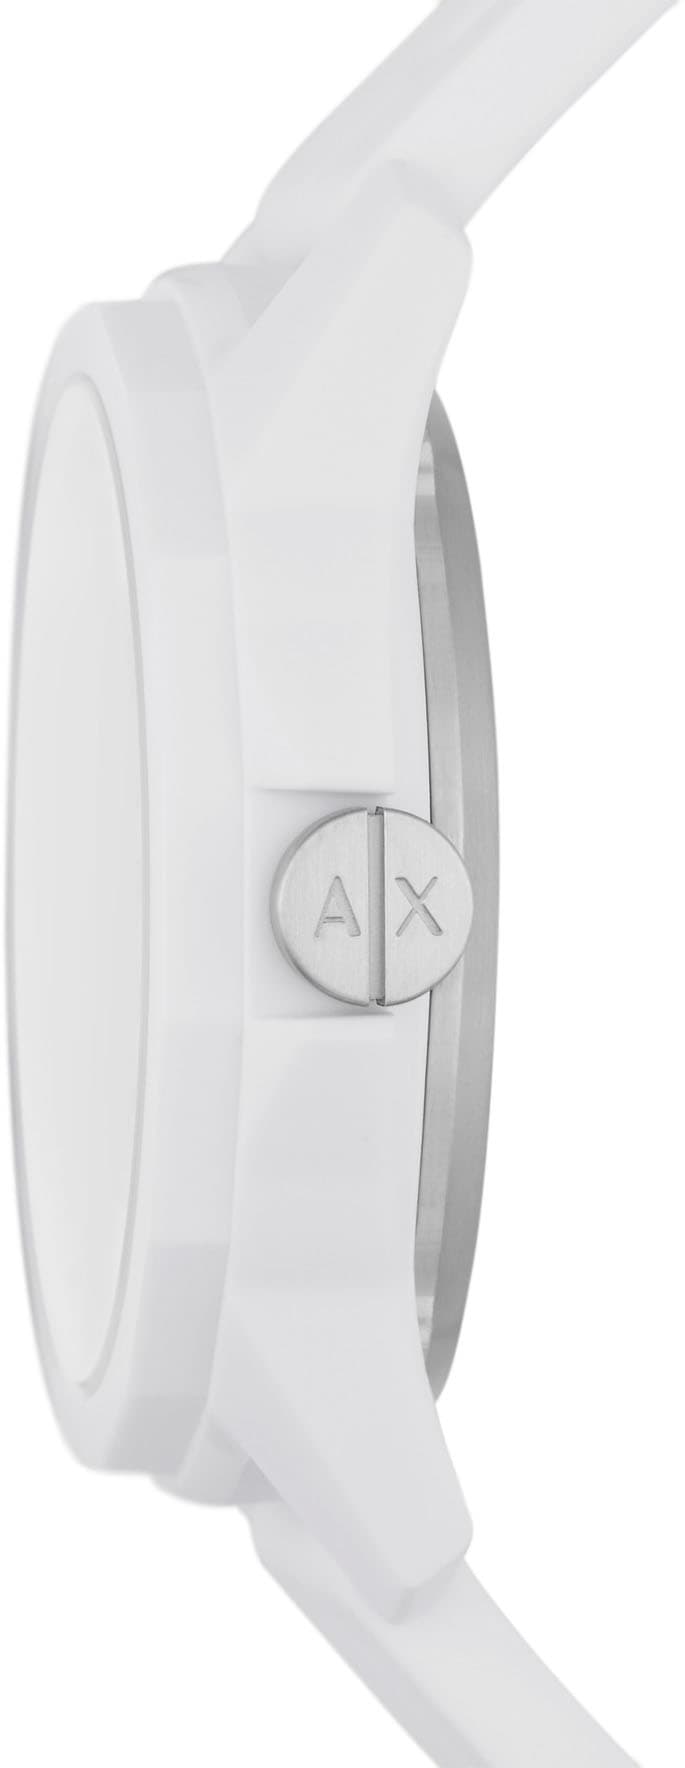 ARMANI EXCHANGE Automatikuhr »AX1729«, Armbanduhr, Herrenuhr, Mechanische Uhr, analog